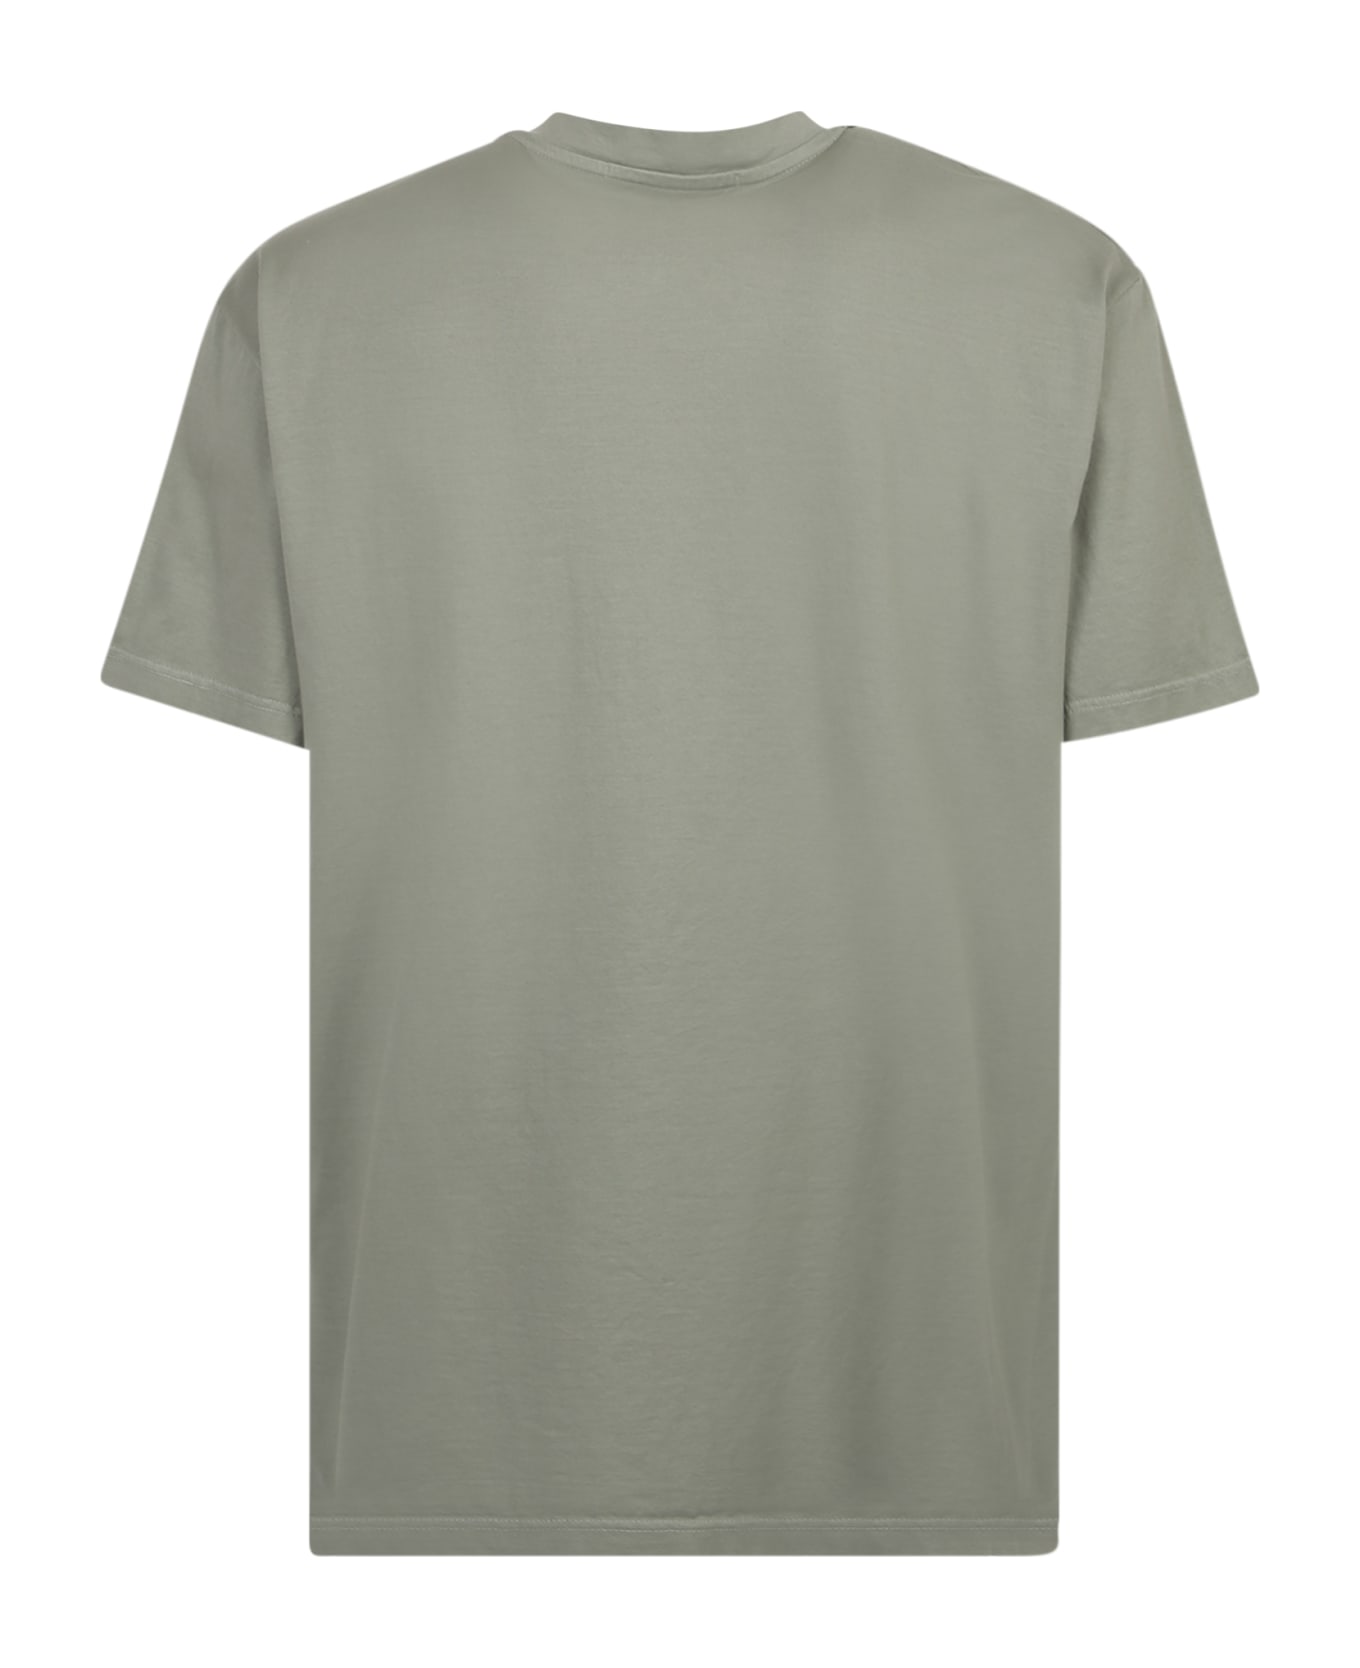 Giuseppe di Morabito William Cotton T-shirt - Green